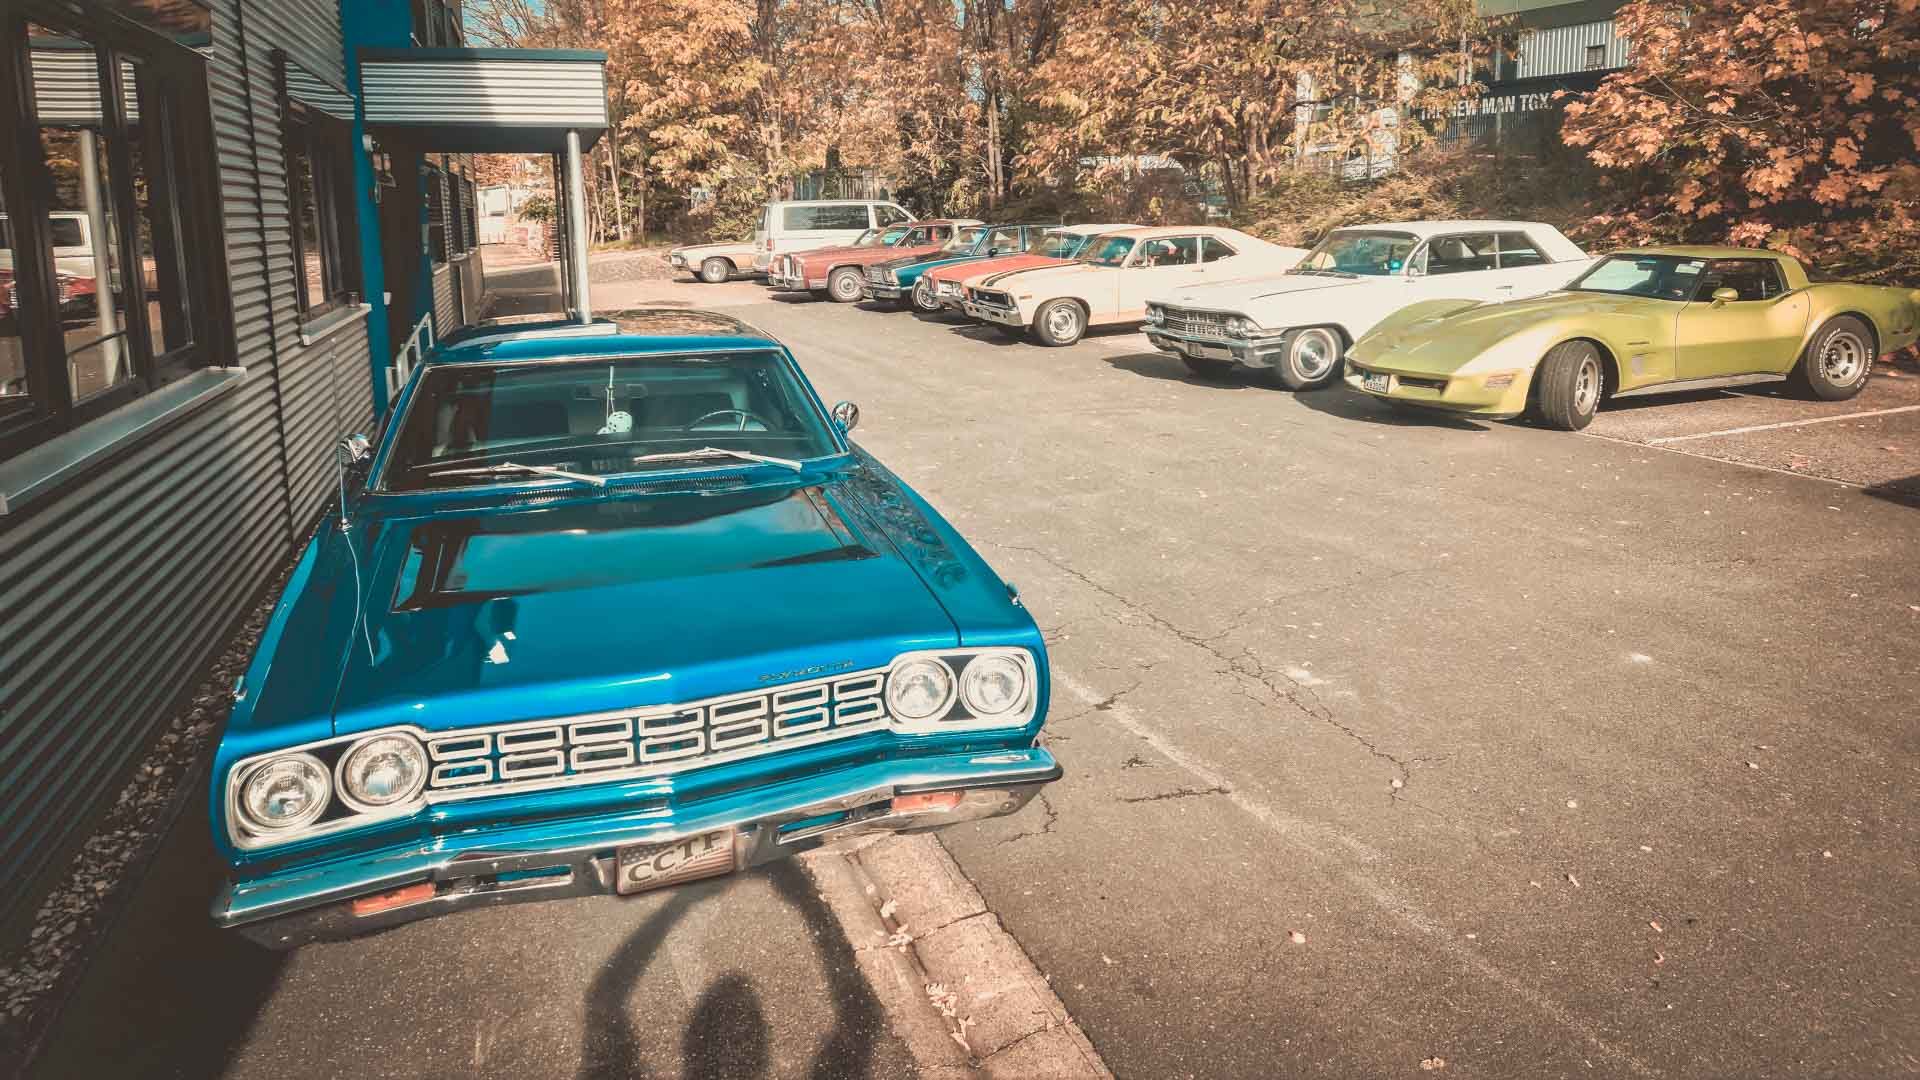 Frontansicht eines blauen Plymouth US-Oldtimer der an einer Hauswand geparkt steht. Im Hintergrund sind weitere geparkte US-Cars zu sehen.